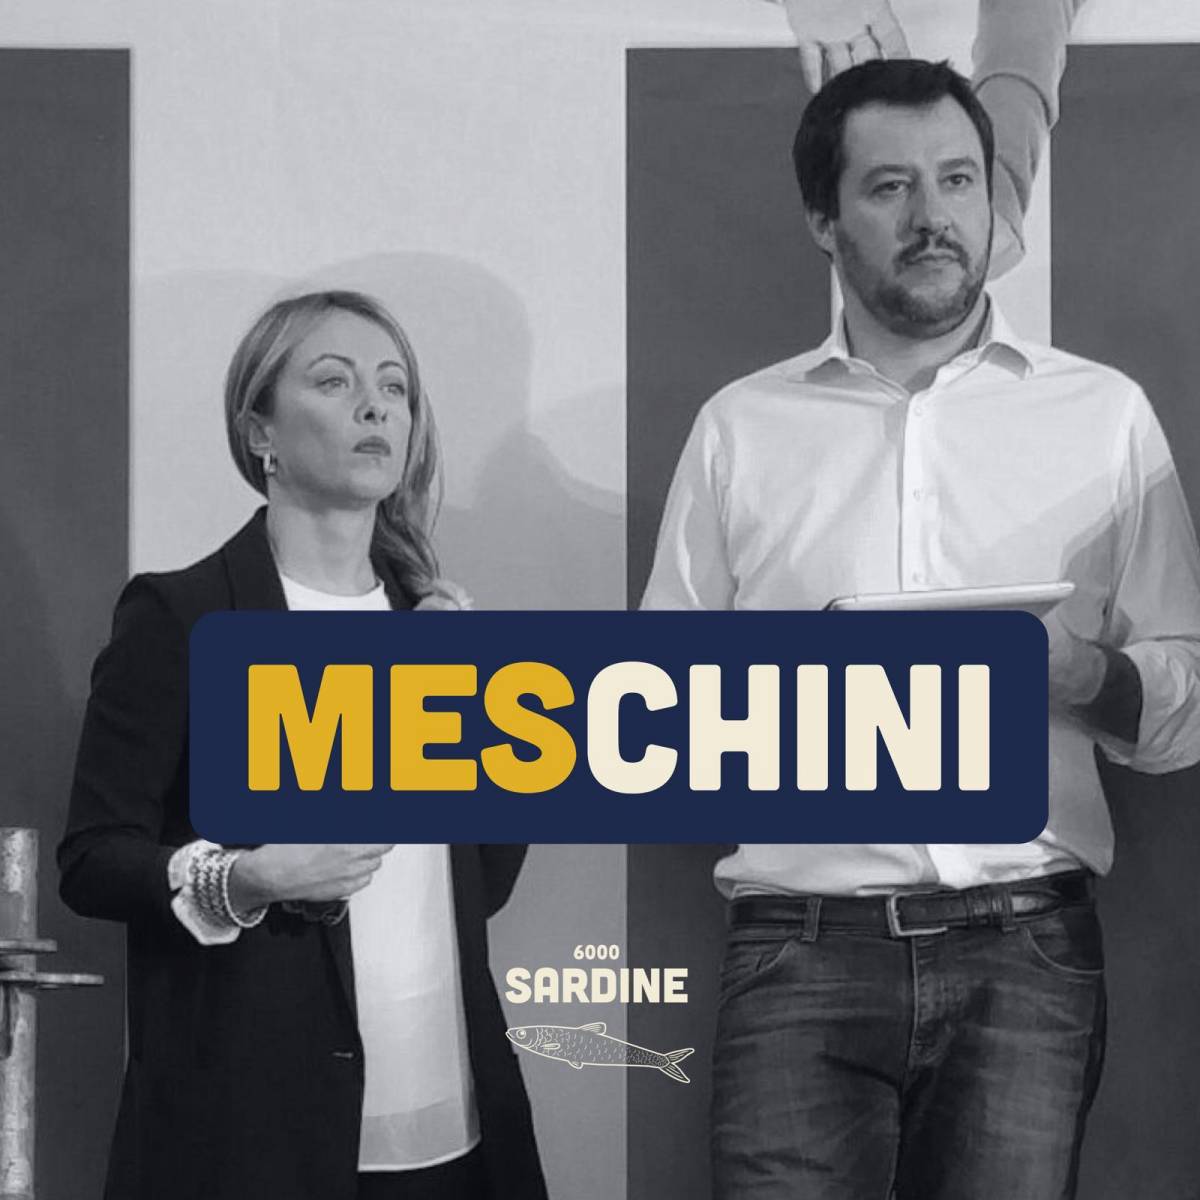 Le sardine ora passano agli insulti: "Salvini e Meloni? Meschini"